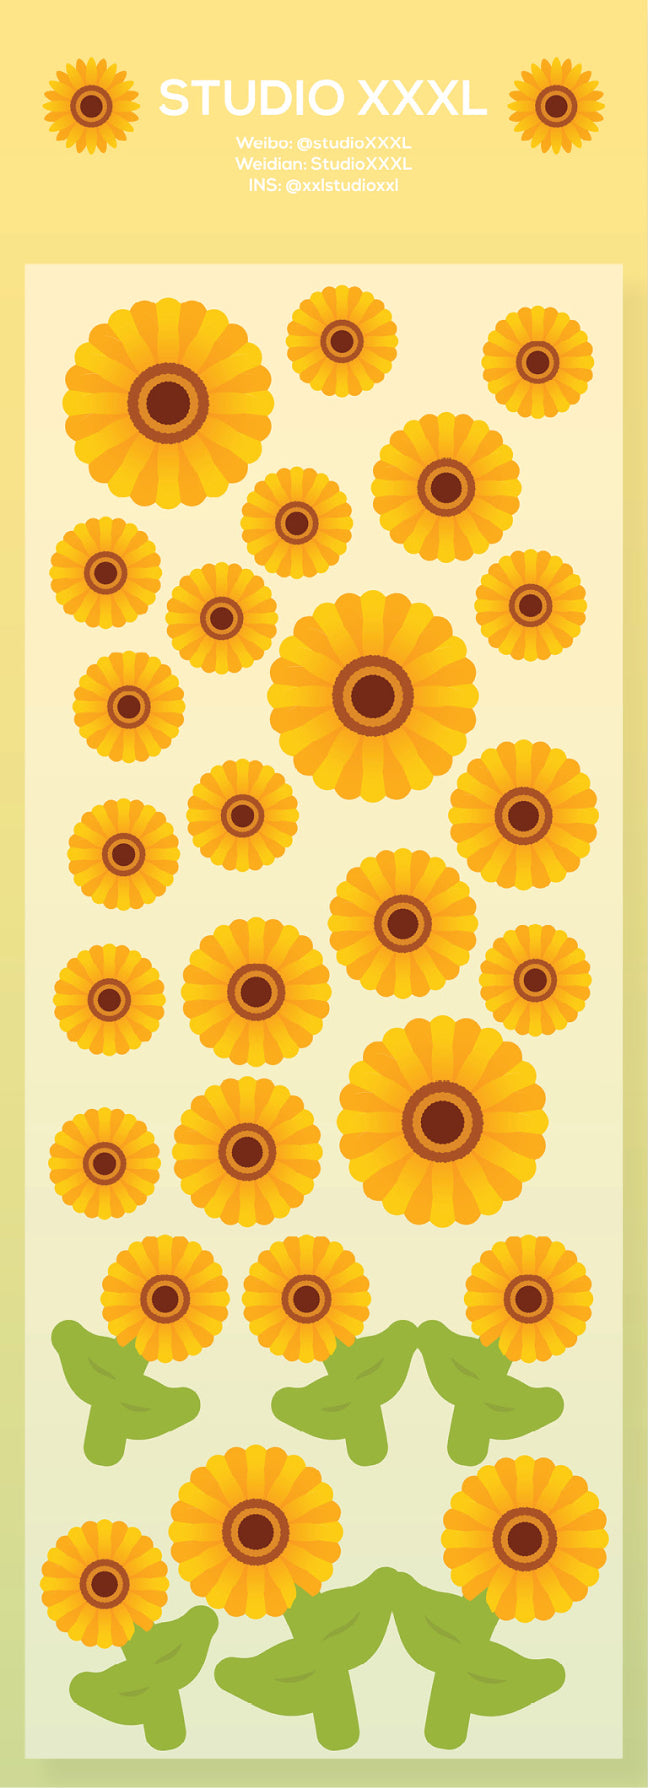 [StudioXXXL] Sunflower (B-GRADE)